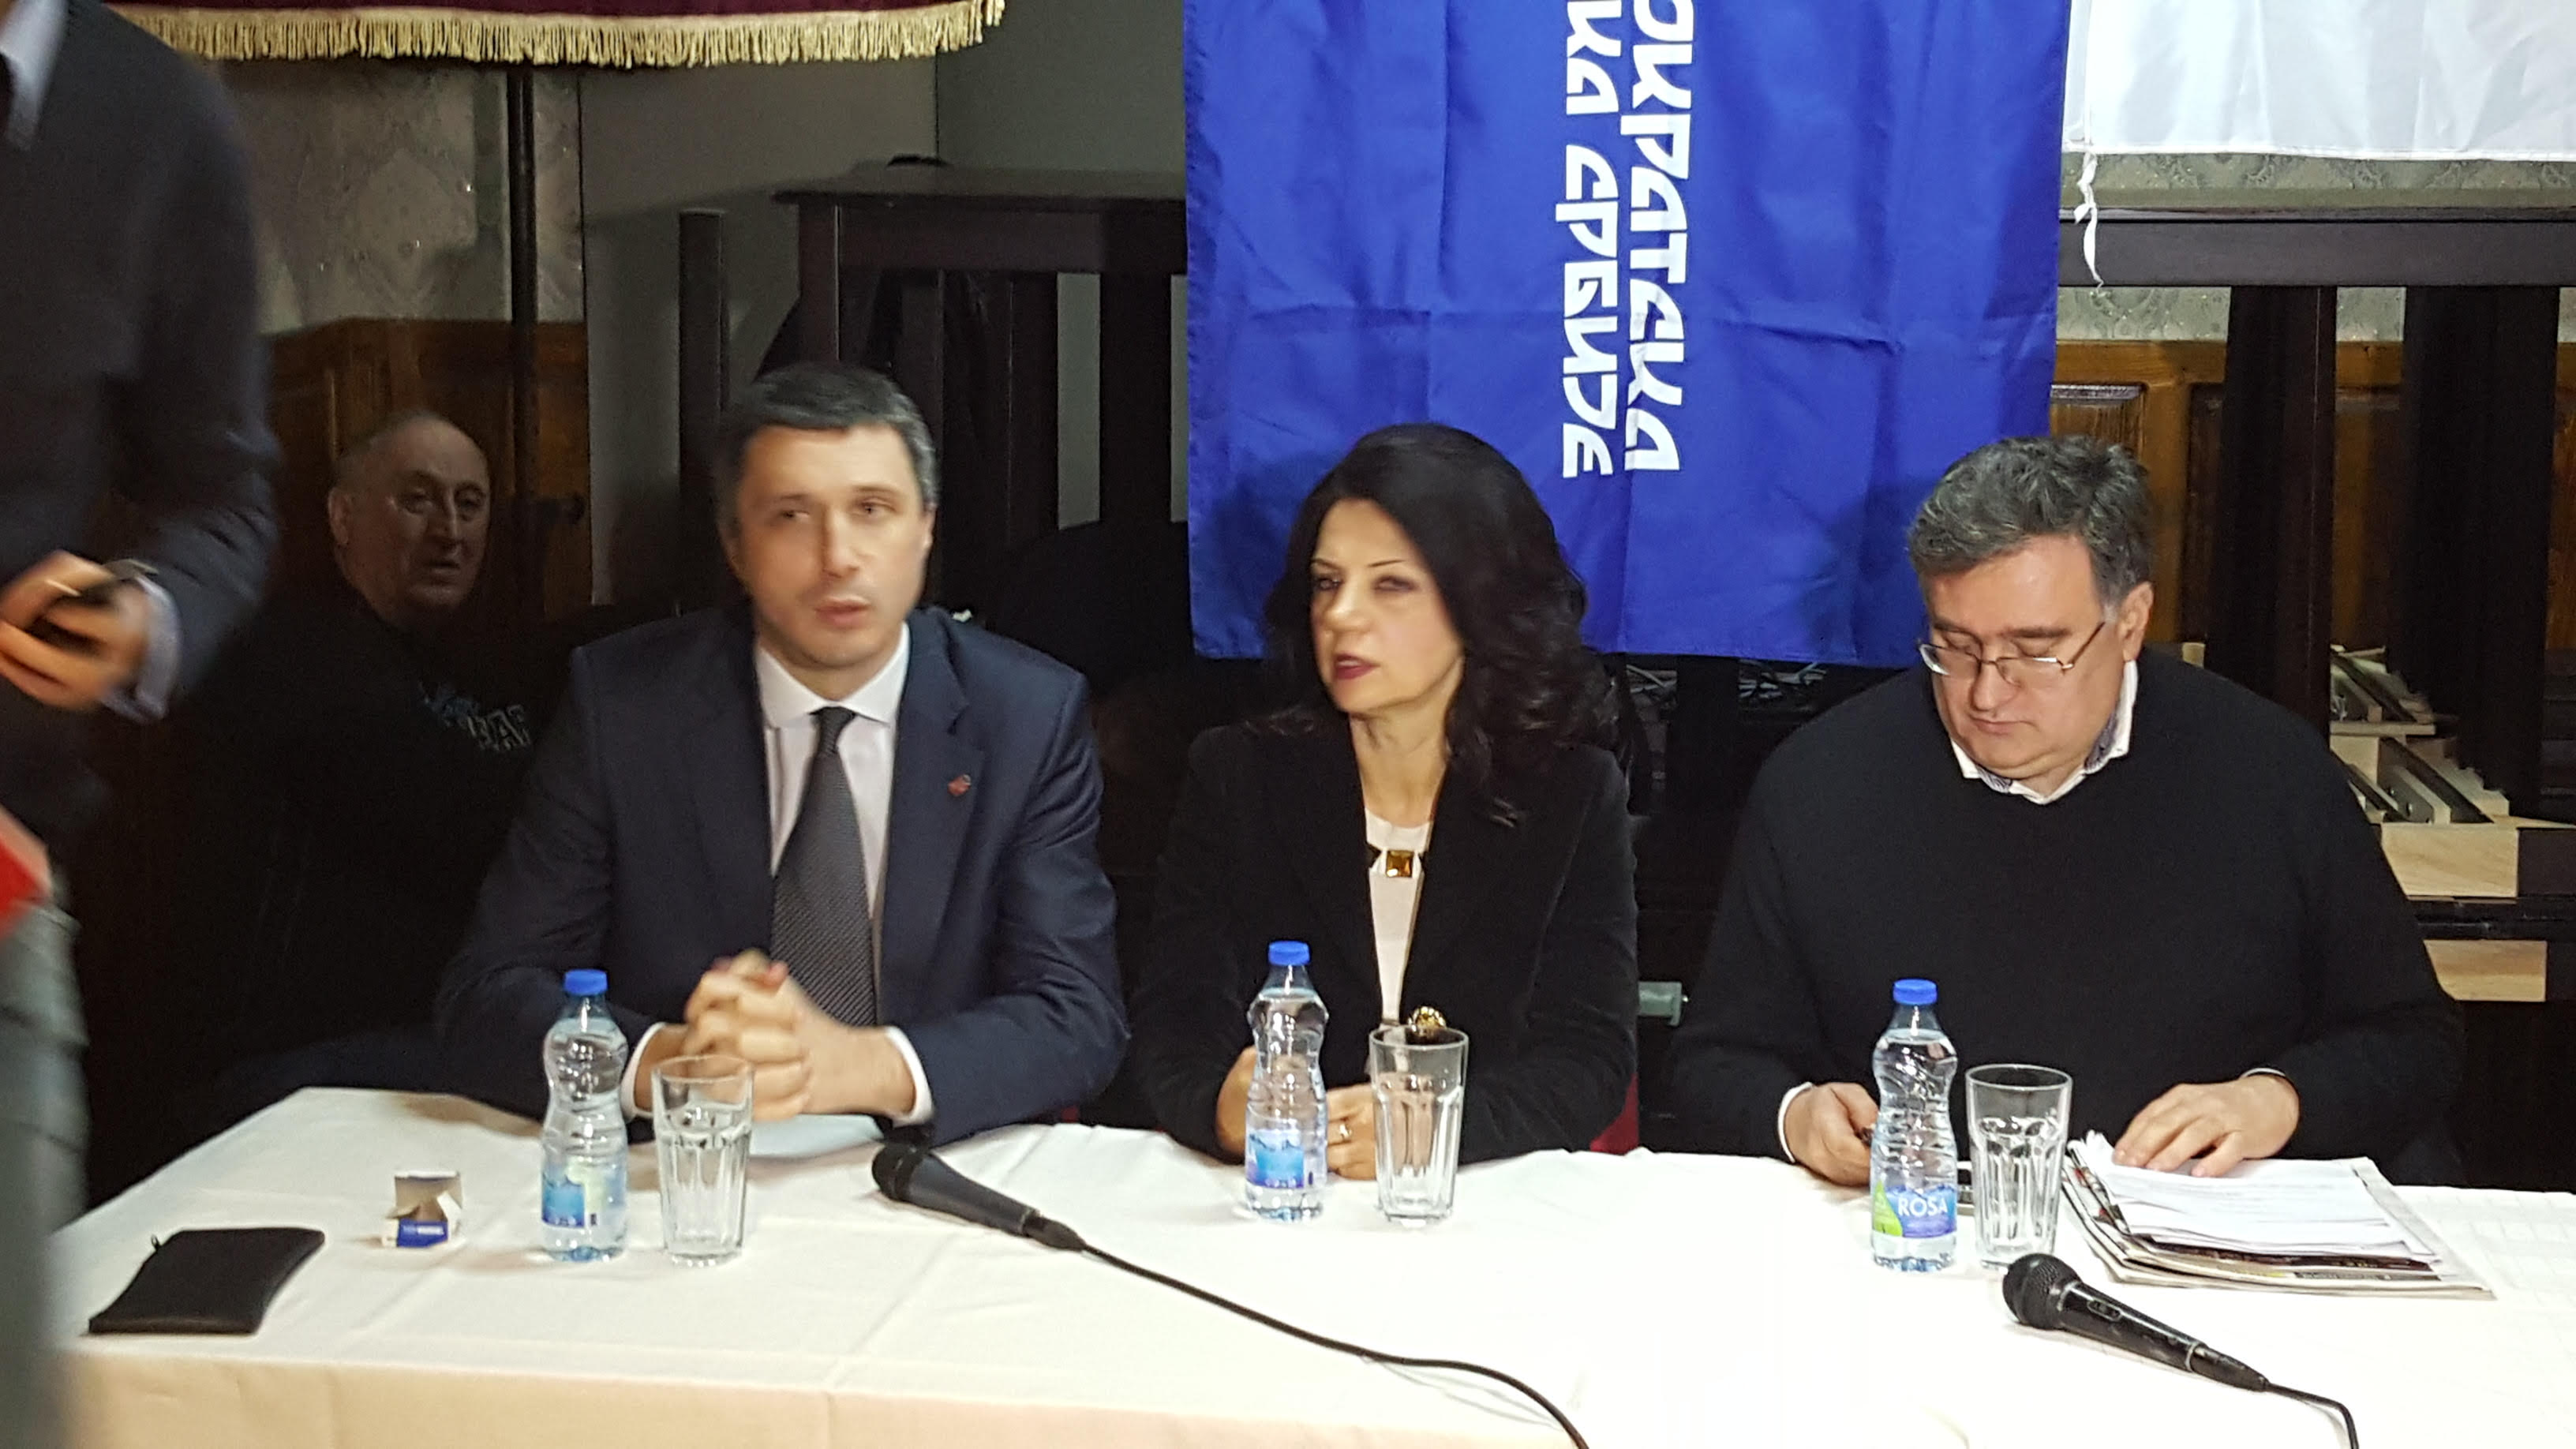 Косовска Митровица: Покренута петиција за организовање локалних избора на територији КиМ по законима Републике Србије